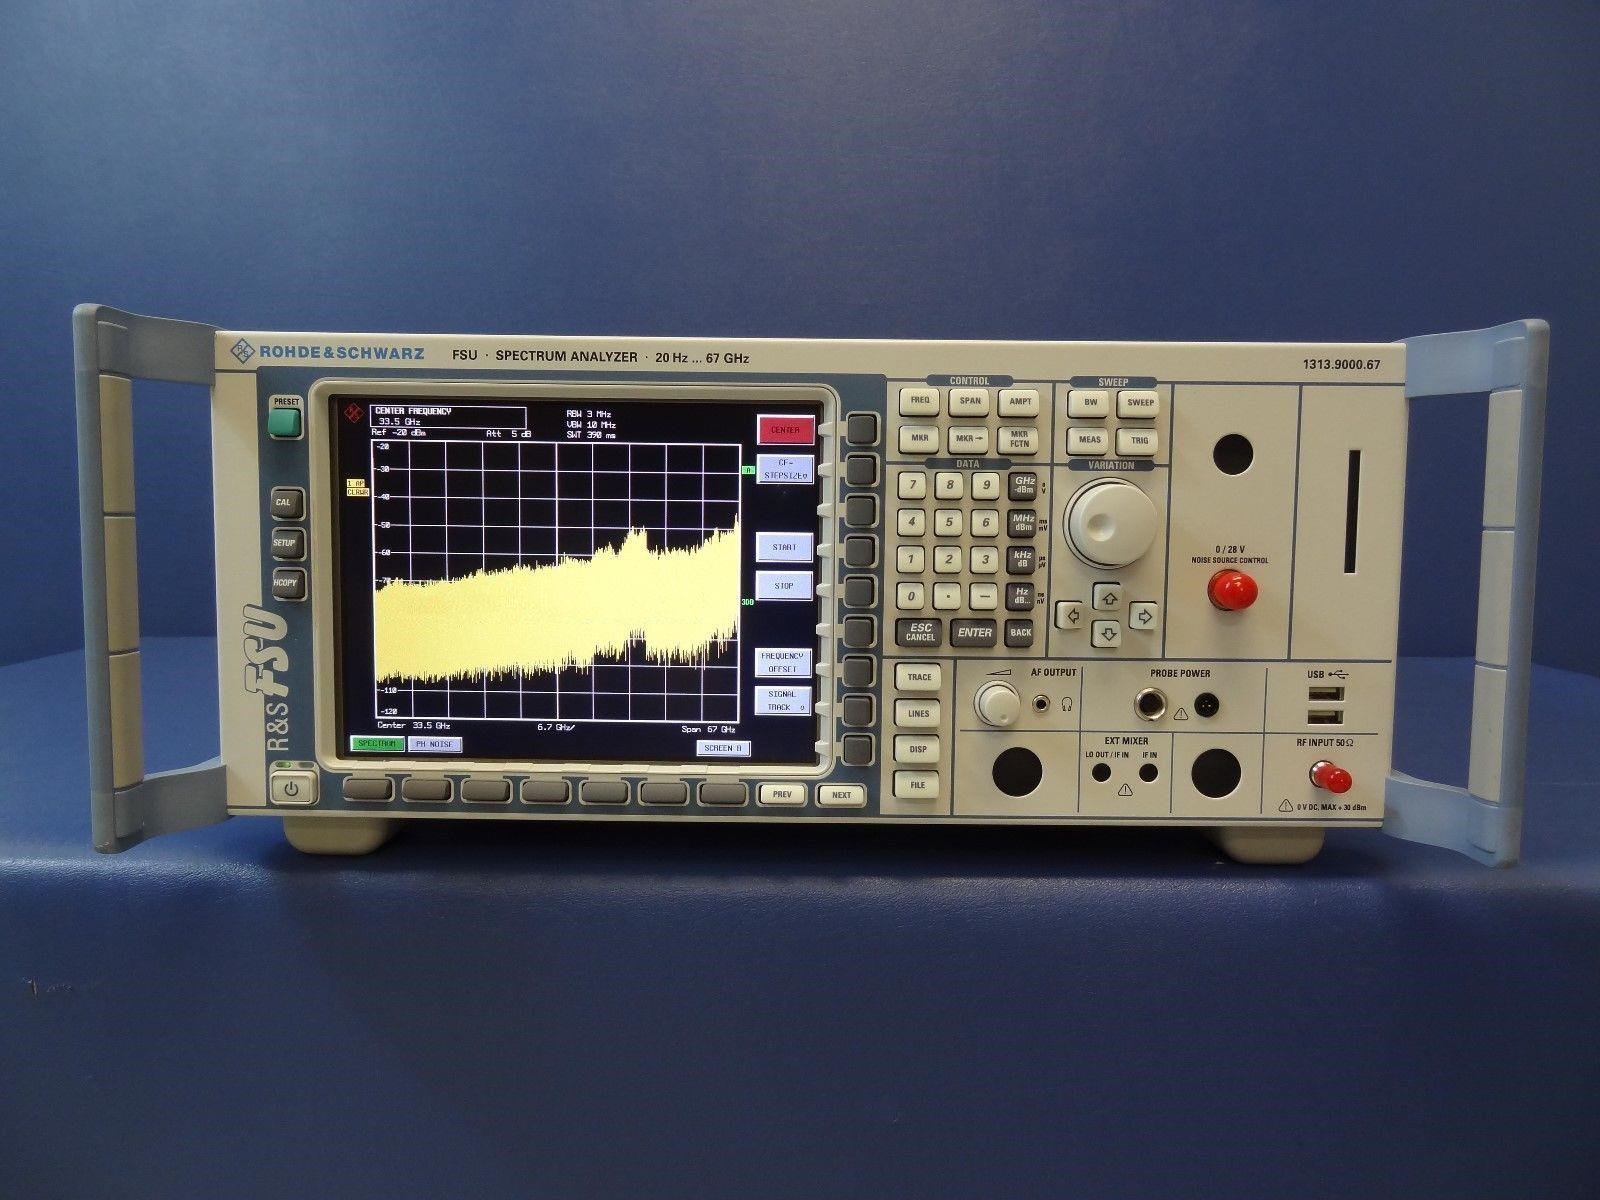 FSU67罗德与施瓦茨频谱分析仪67GHz